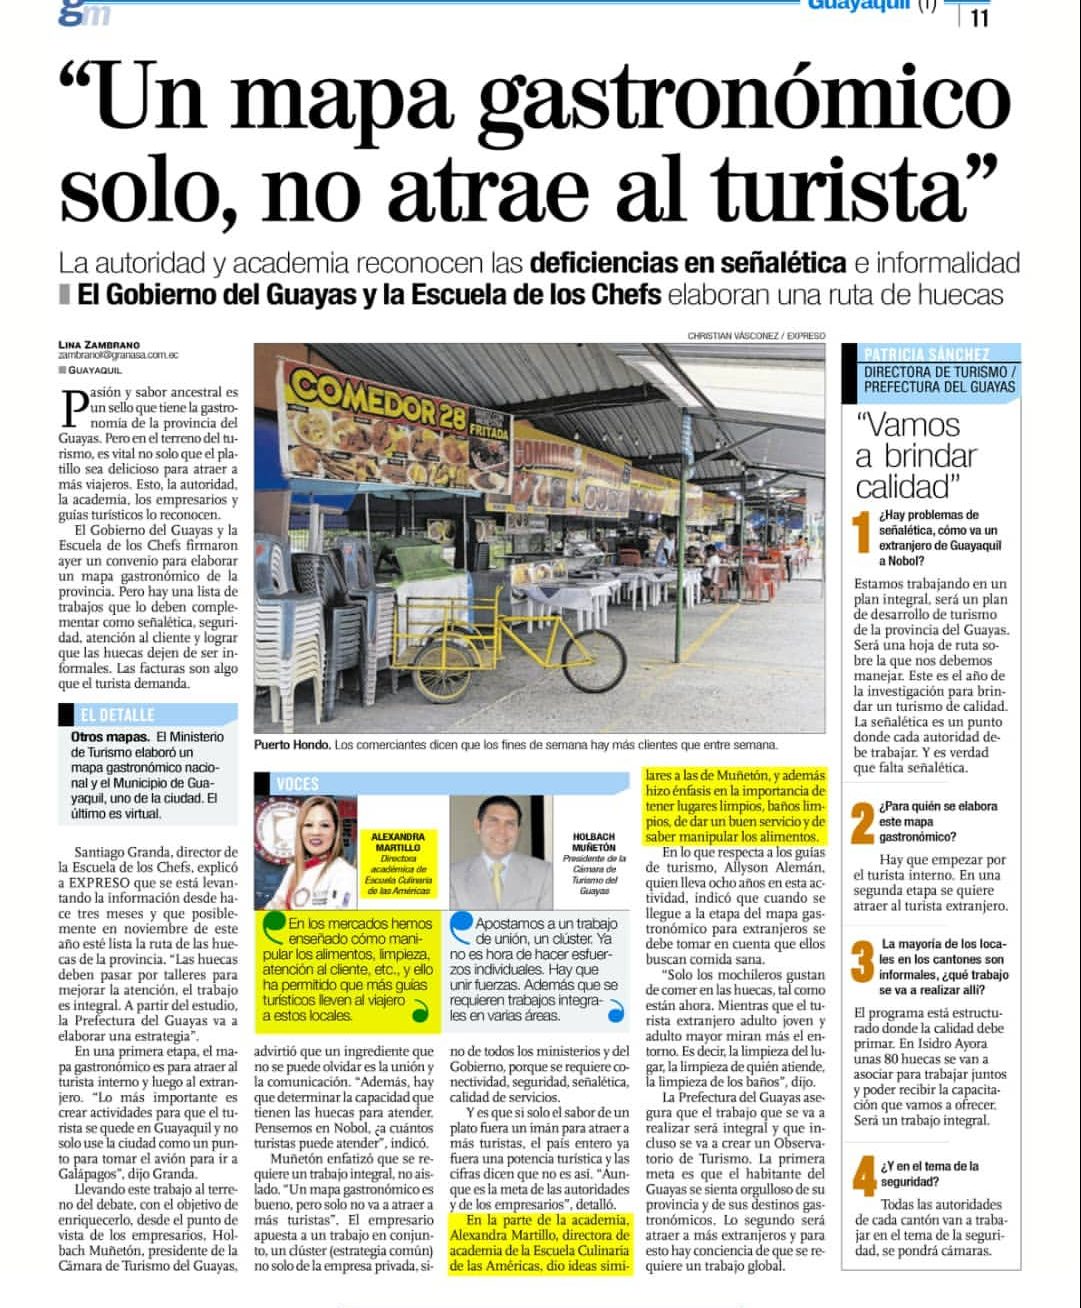 Nota de prensa de Diario Expreso, sobre mapa gastronómico.